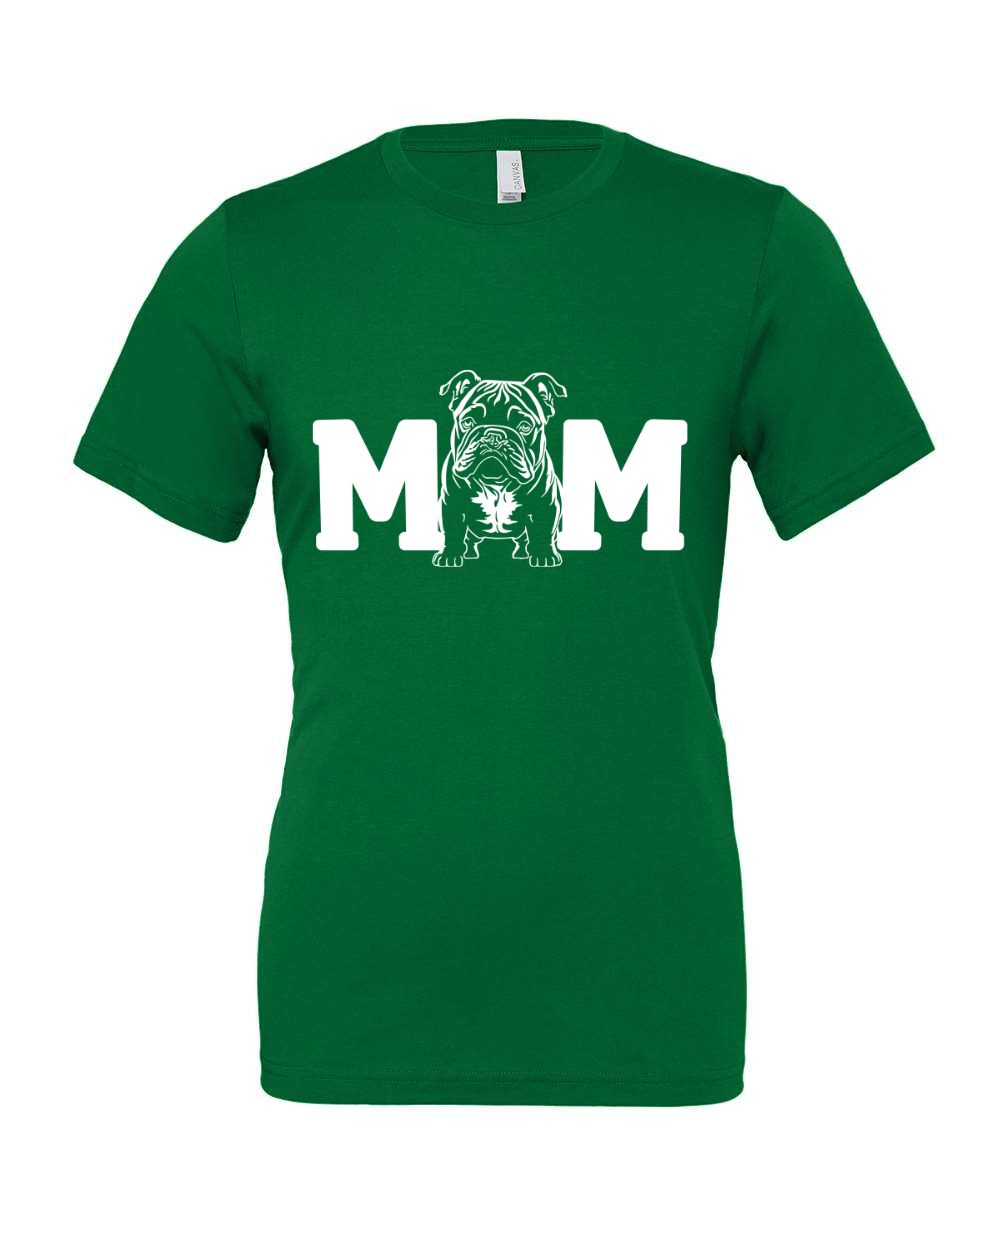 Mom British Bulldog T-Shirt